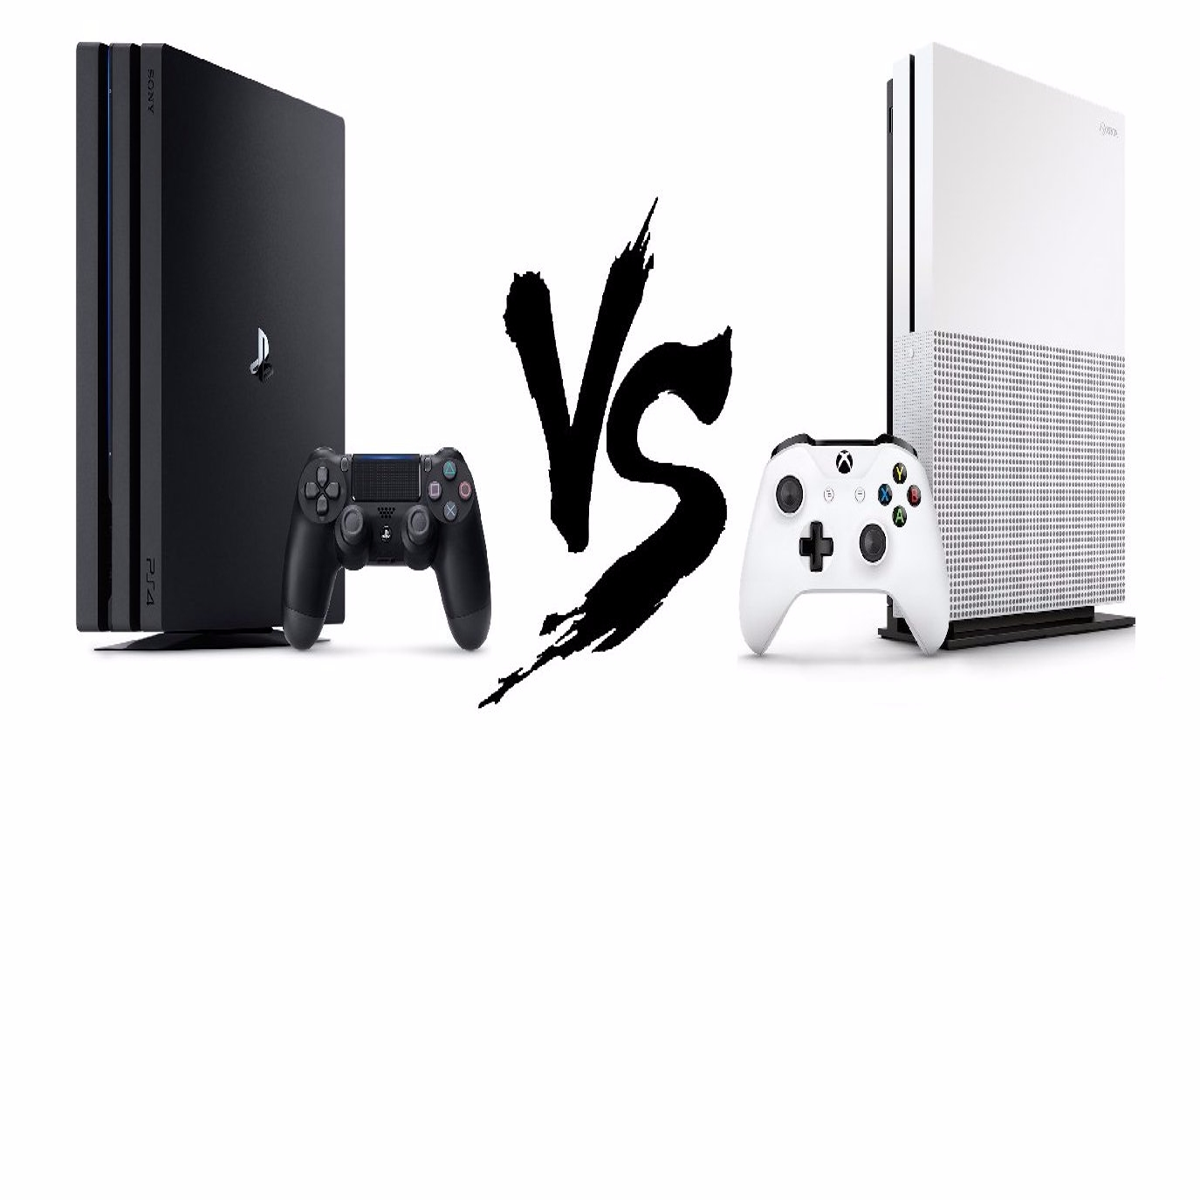 Conheça as principais diferenças entre o PS4 Slim e o PS4 Pro